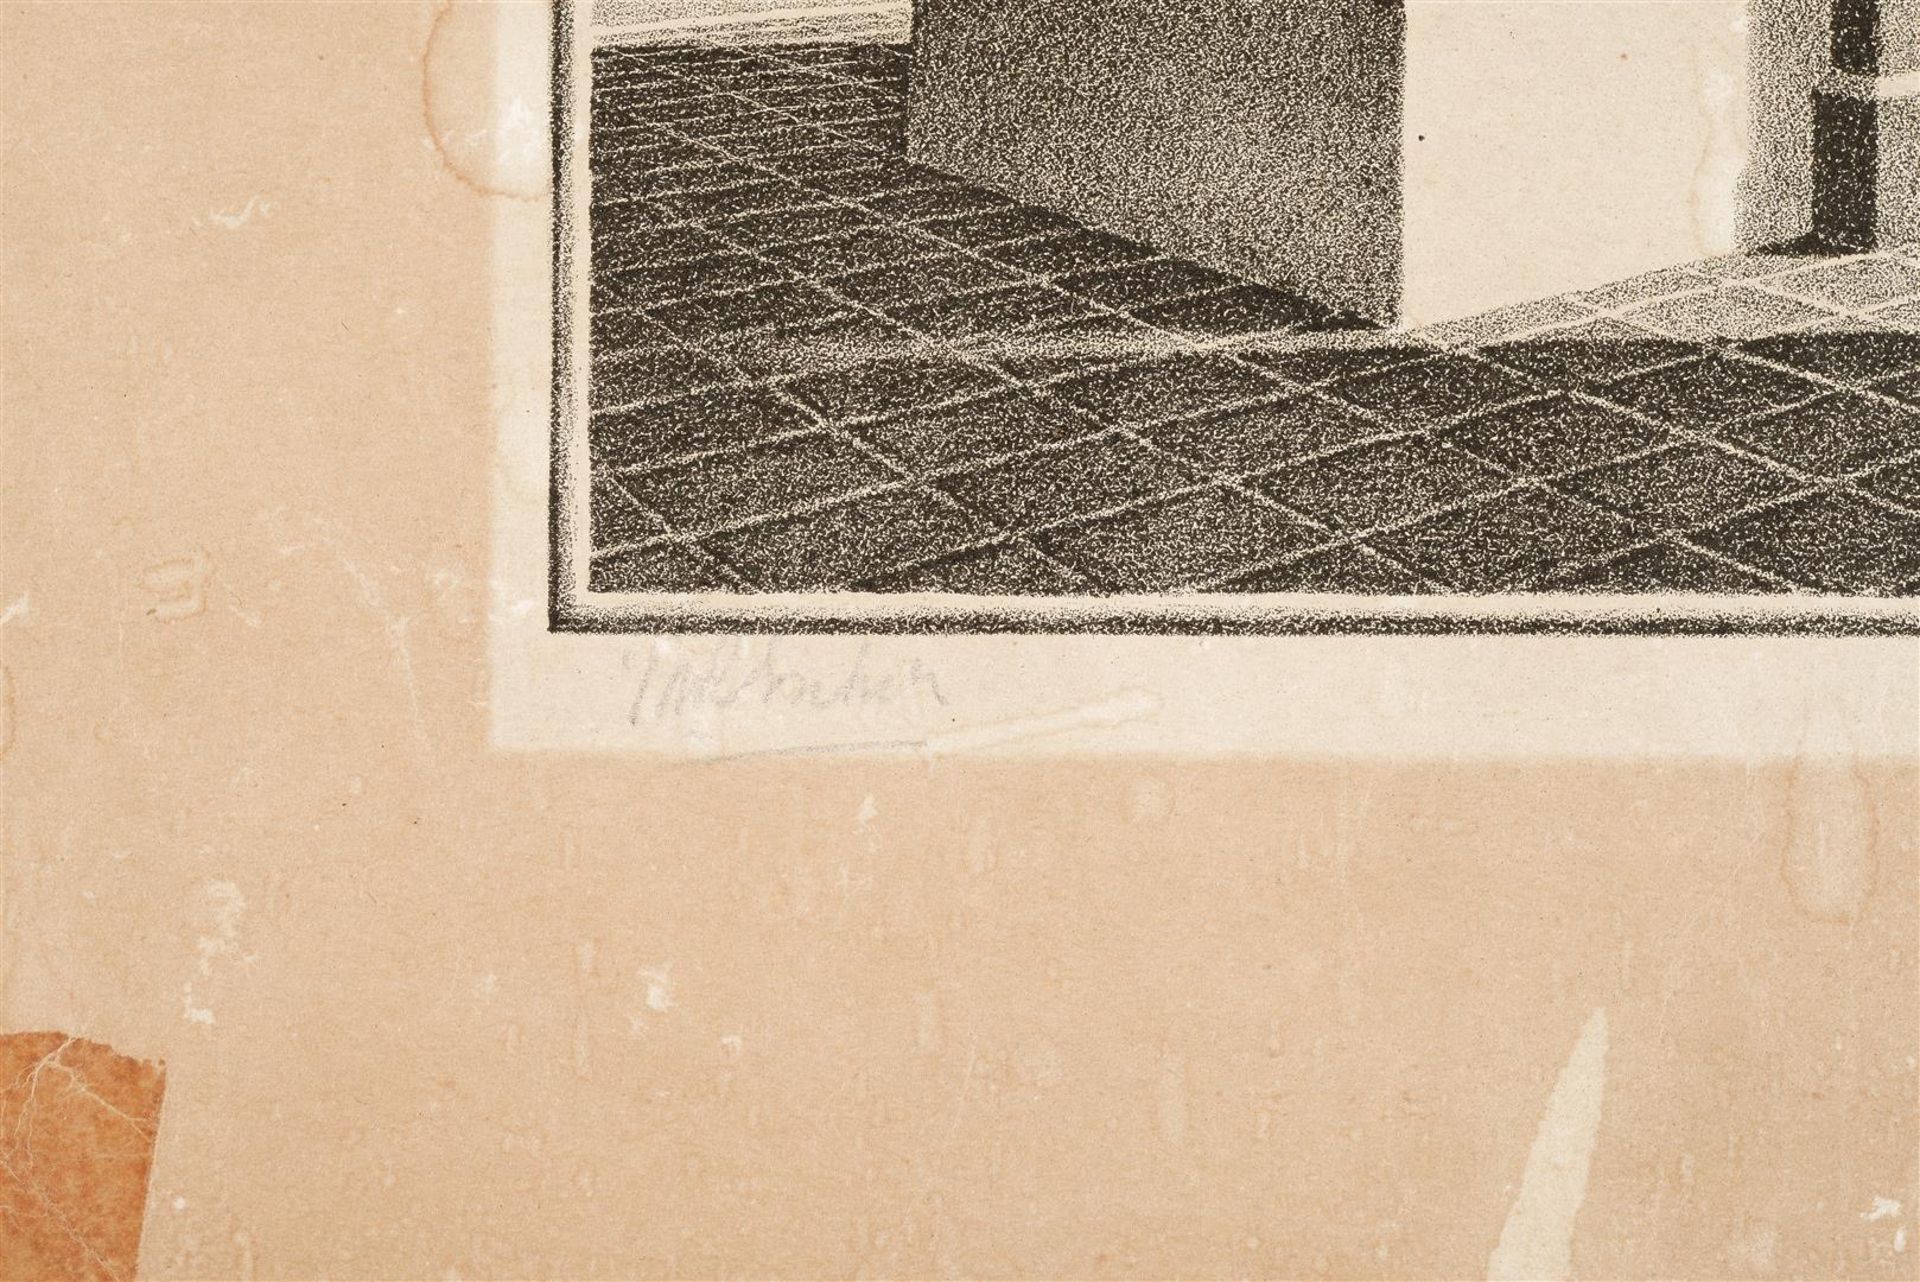 Maurits Cornelis Escher (1898-1972) - Image 3 of 5